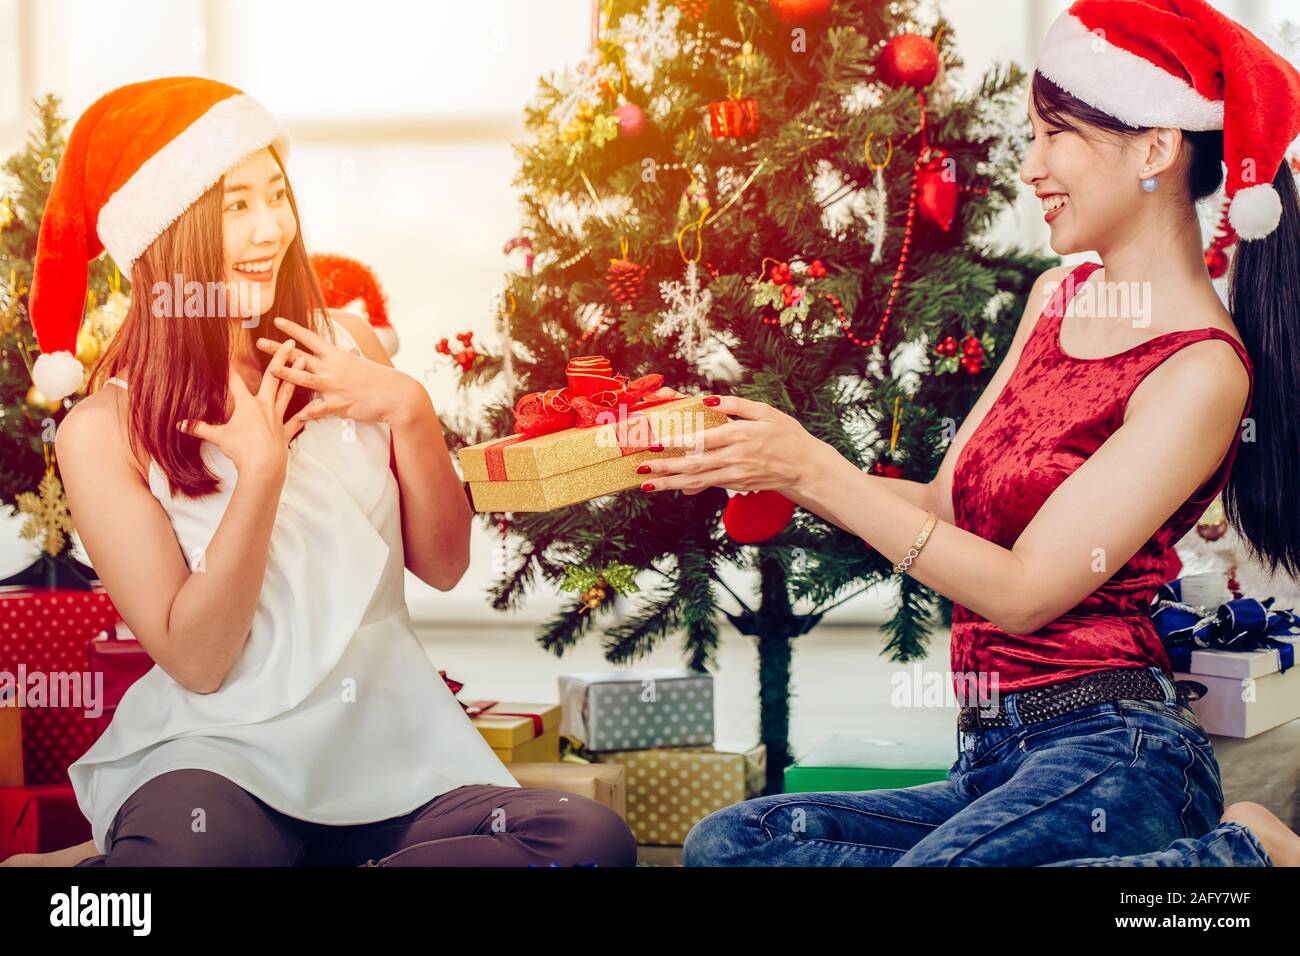 Asiatische Frau, Weihnachten Neujahr Geschenkbox präsent zu ihrer Freundin Gefühl überraschung Ausdruck. Stockfoto